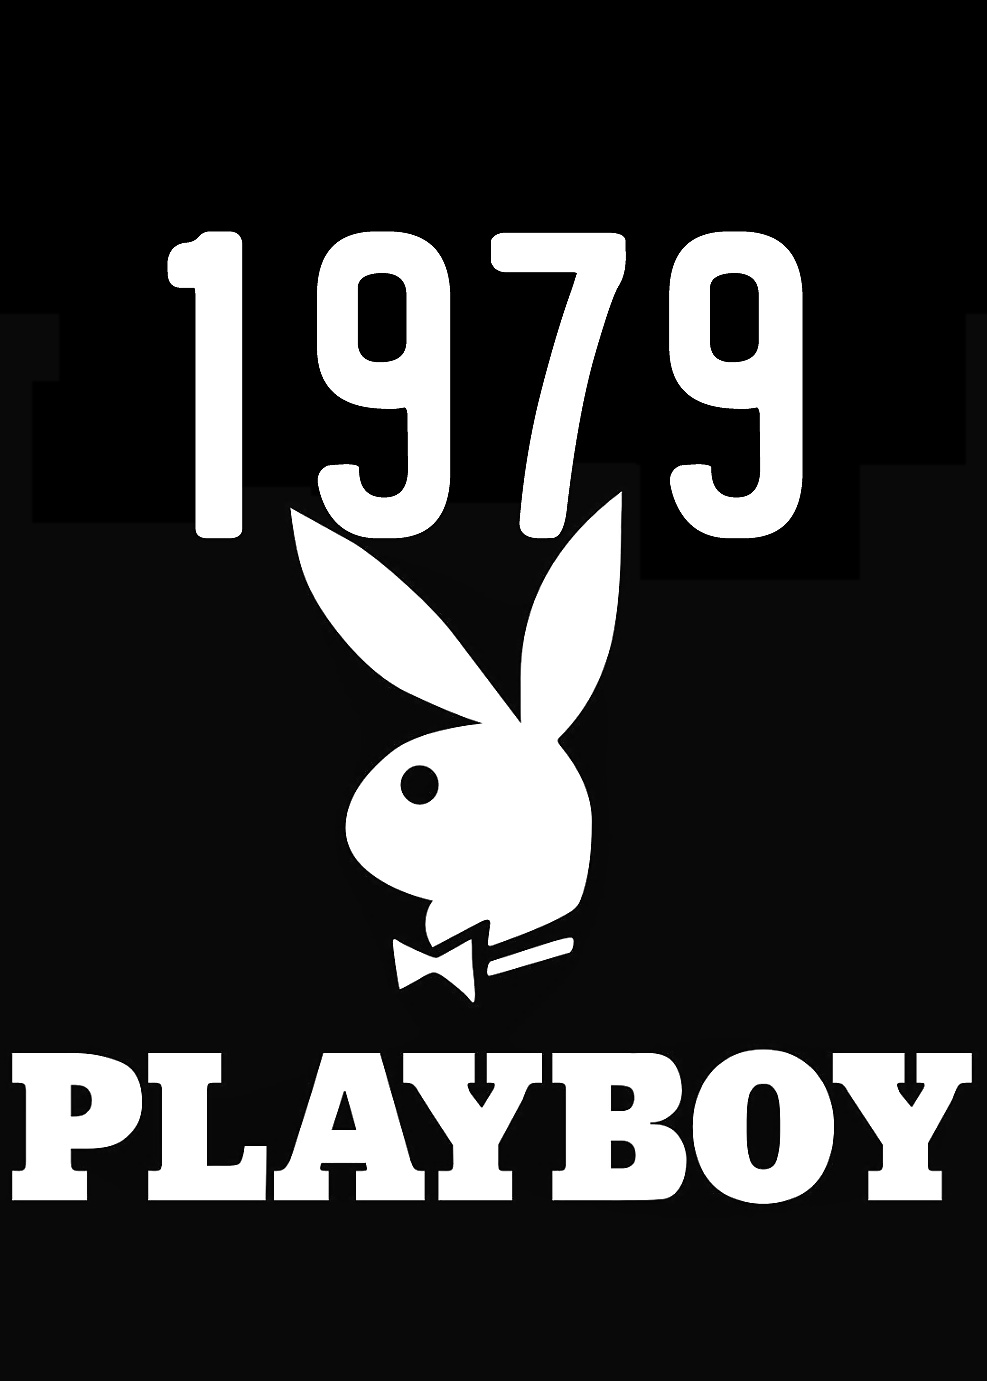 Playboy Magazin Am Besten Von 1979 Ultra #40205316